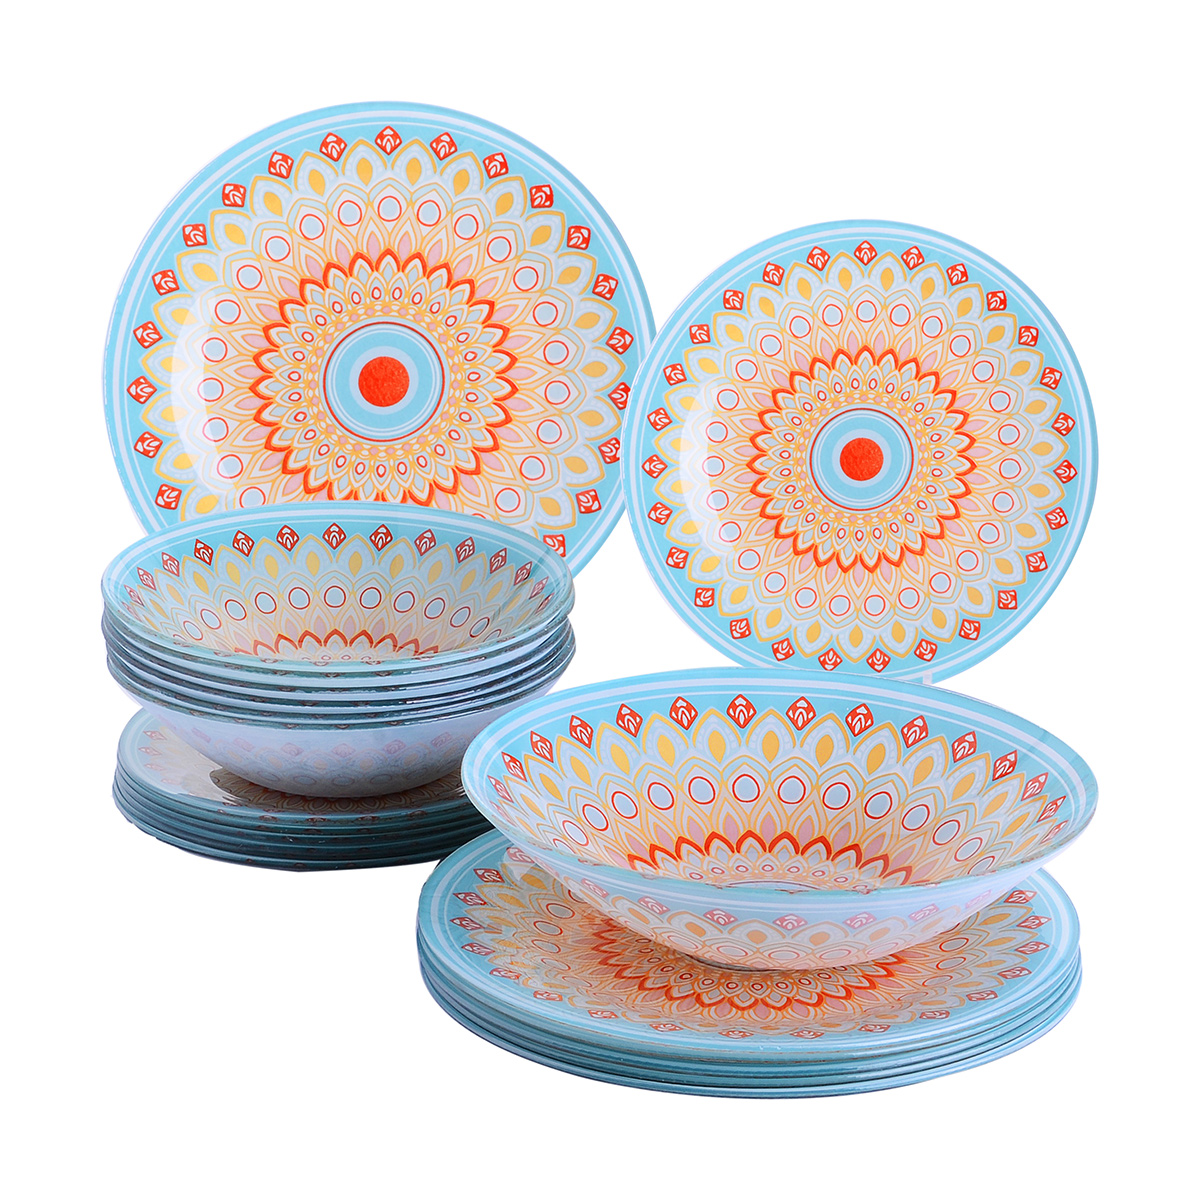 табурет в марокканском стиле в32 см ghada единый размер бежевый Набор стеклянной посуды в марокканском стиле (19 предметов)